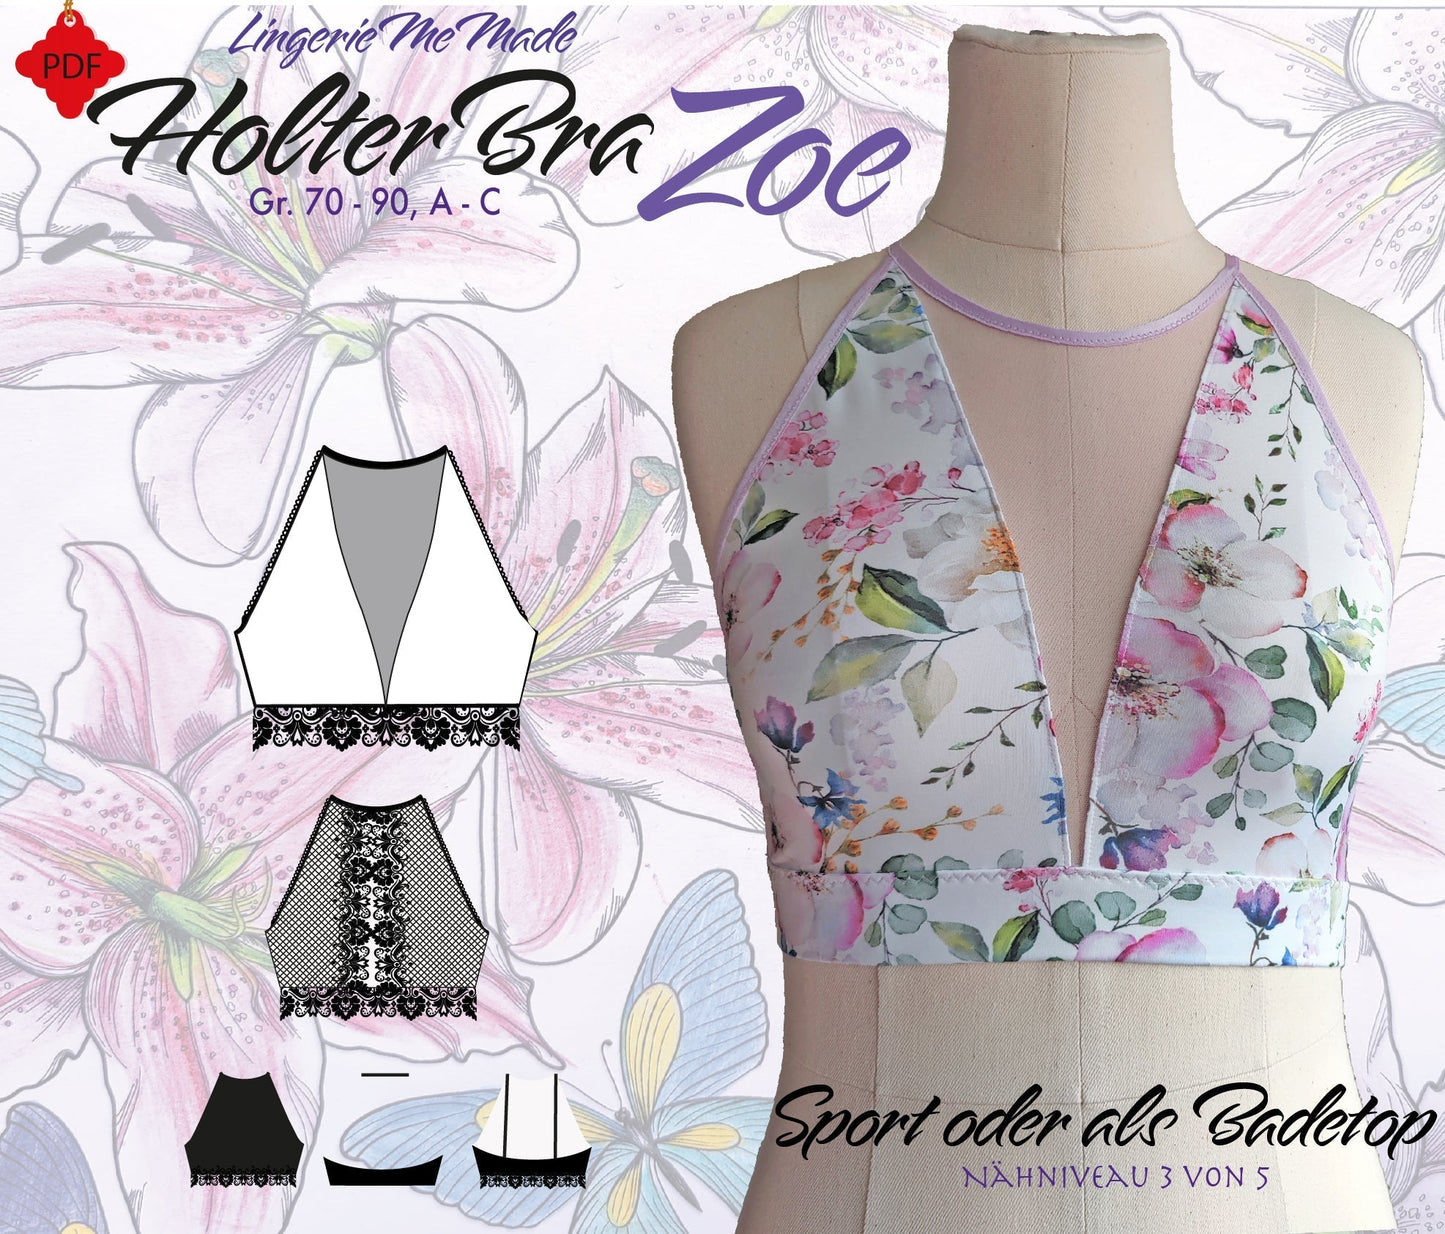 Set de costura para HolterBra Zoe con malla elástica en color coral. Patrón incluido de forma gratuita. IDdiyklx5